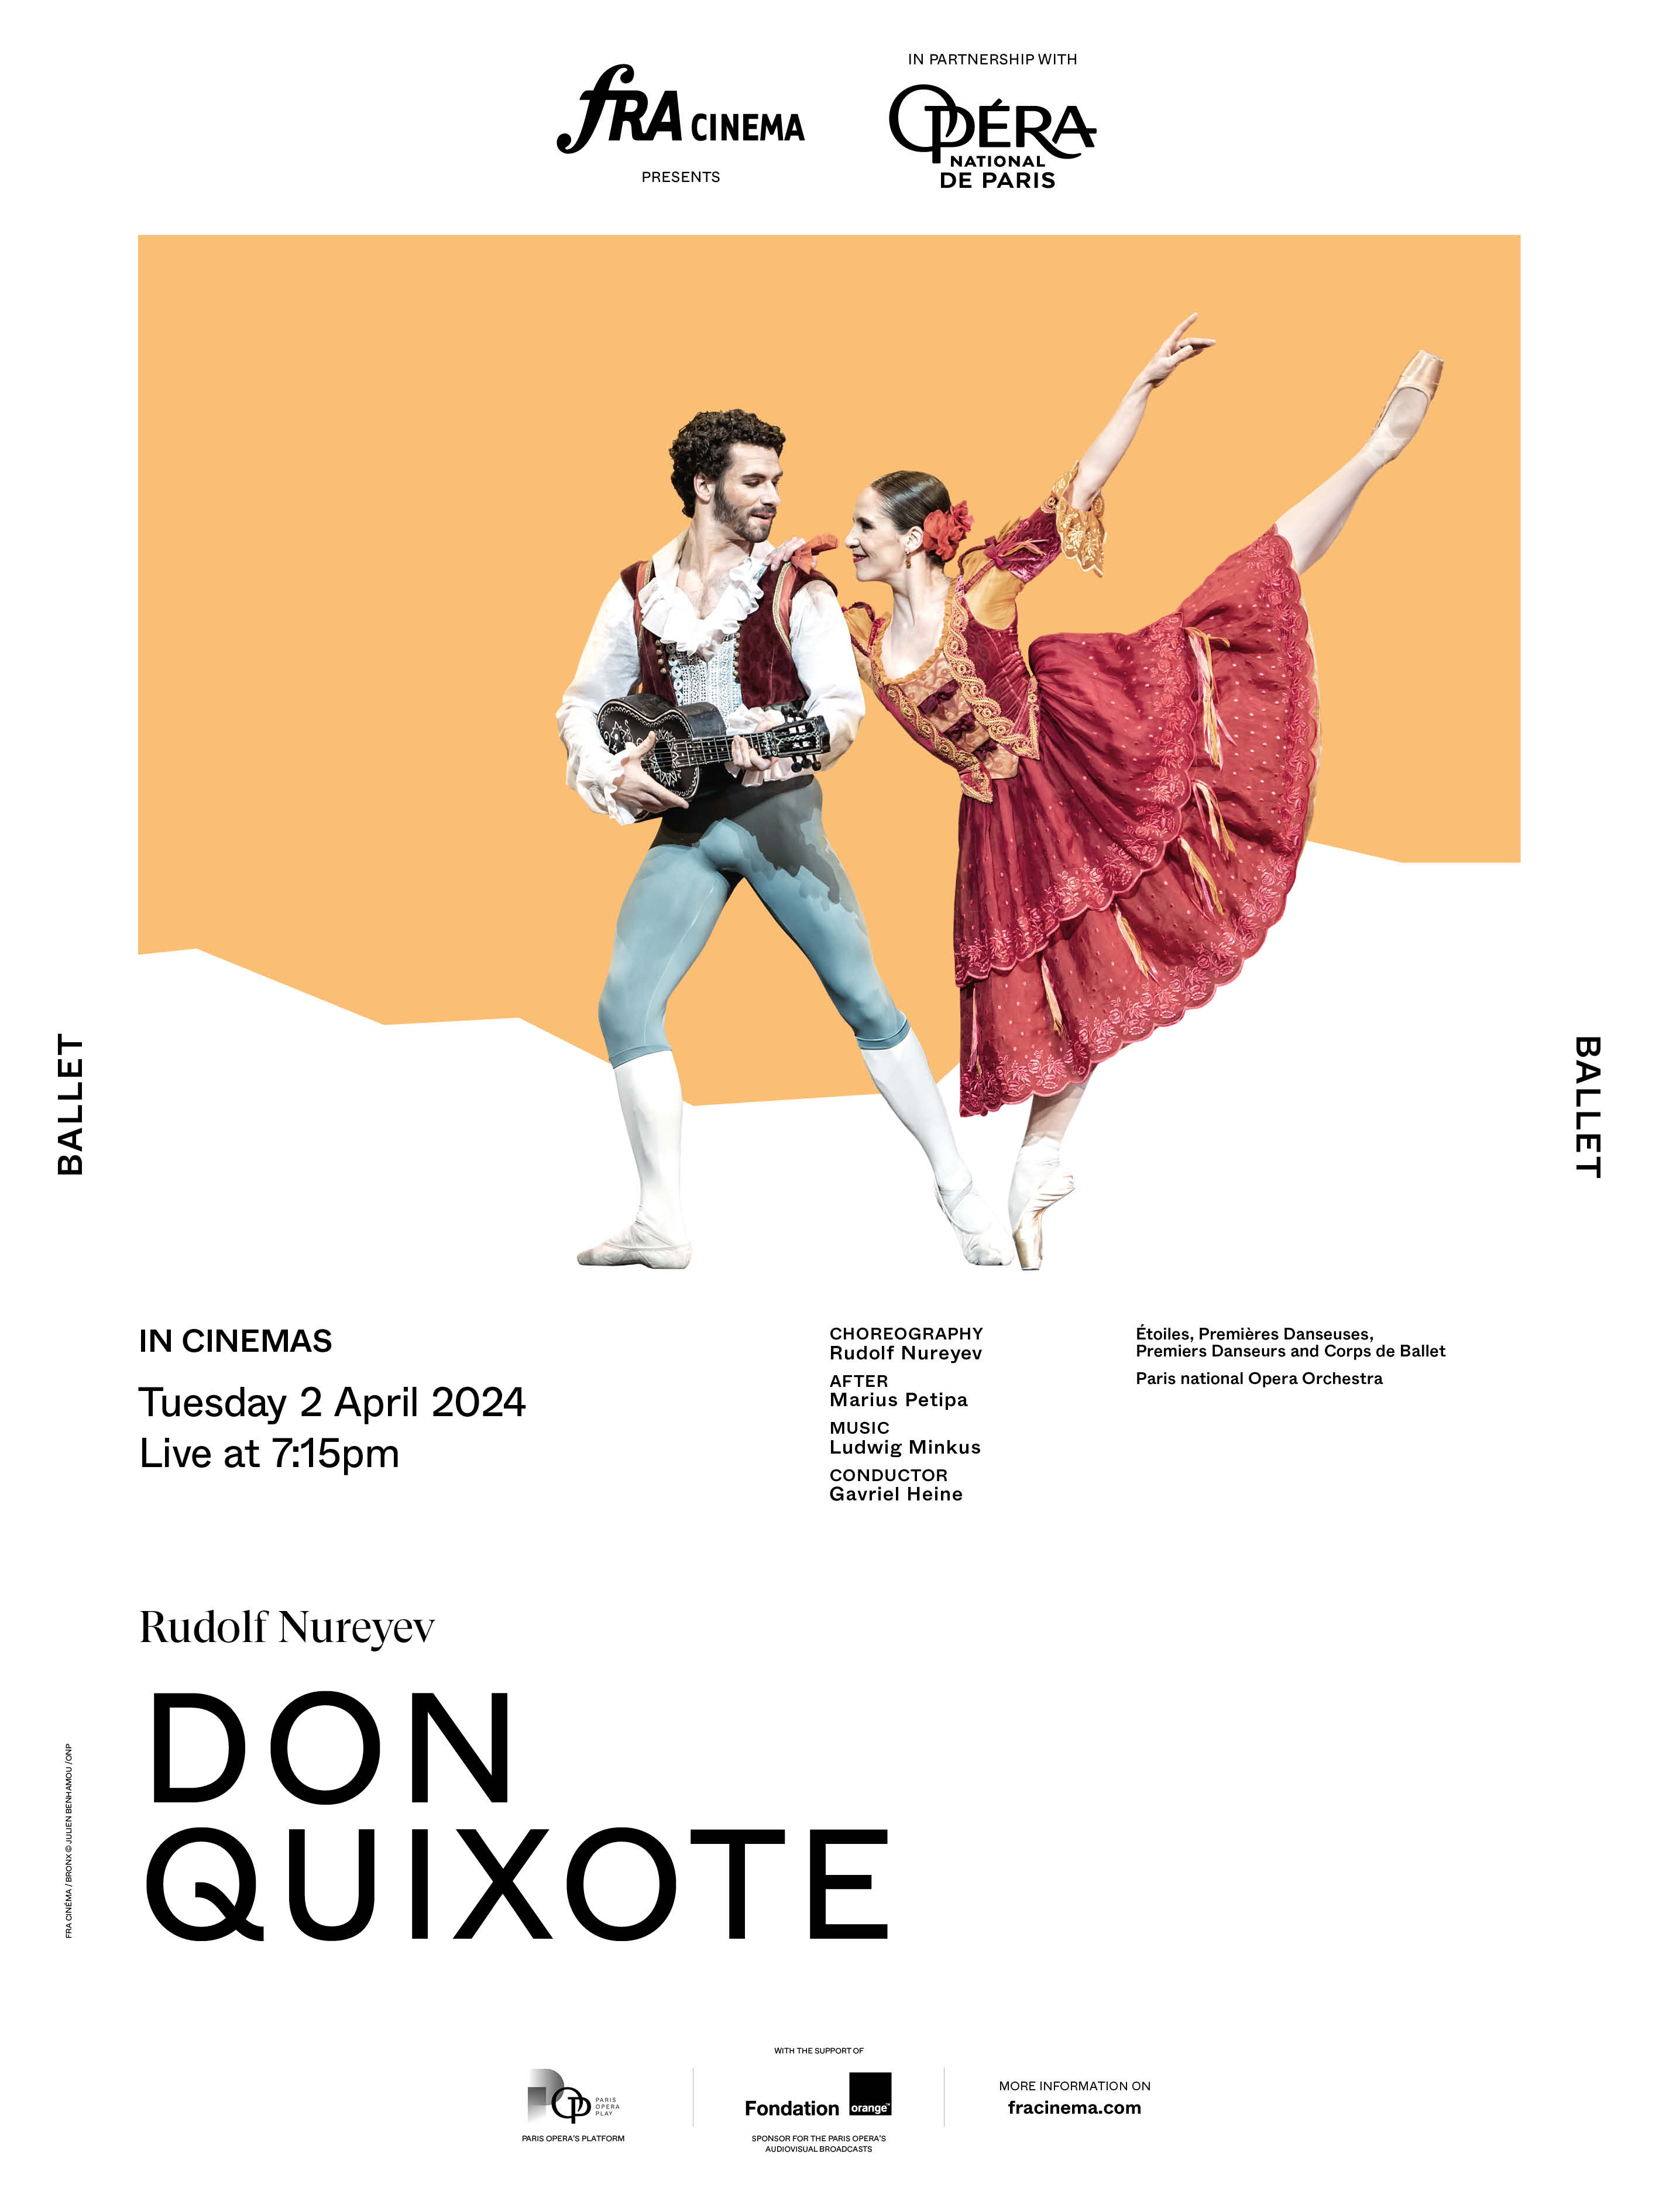 Don Quixote (ballet) | fracinema.com